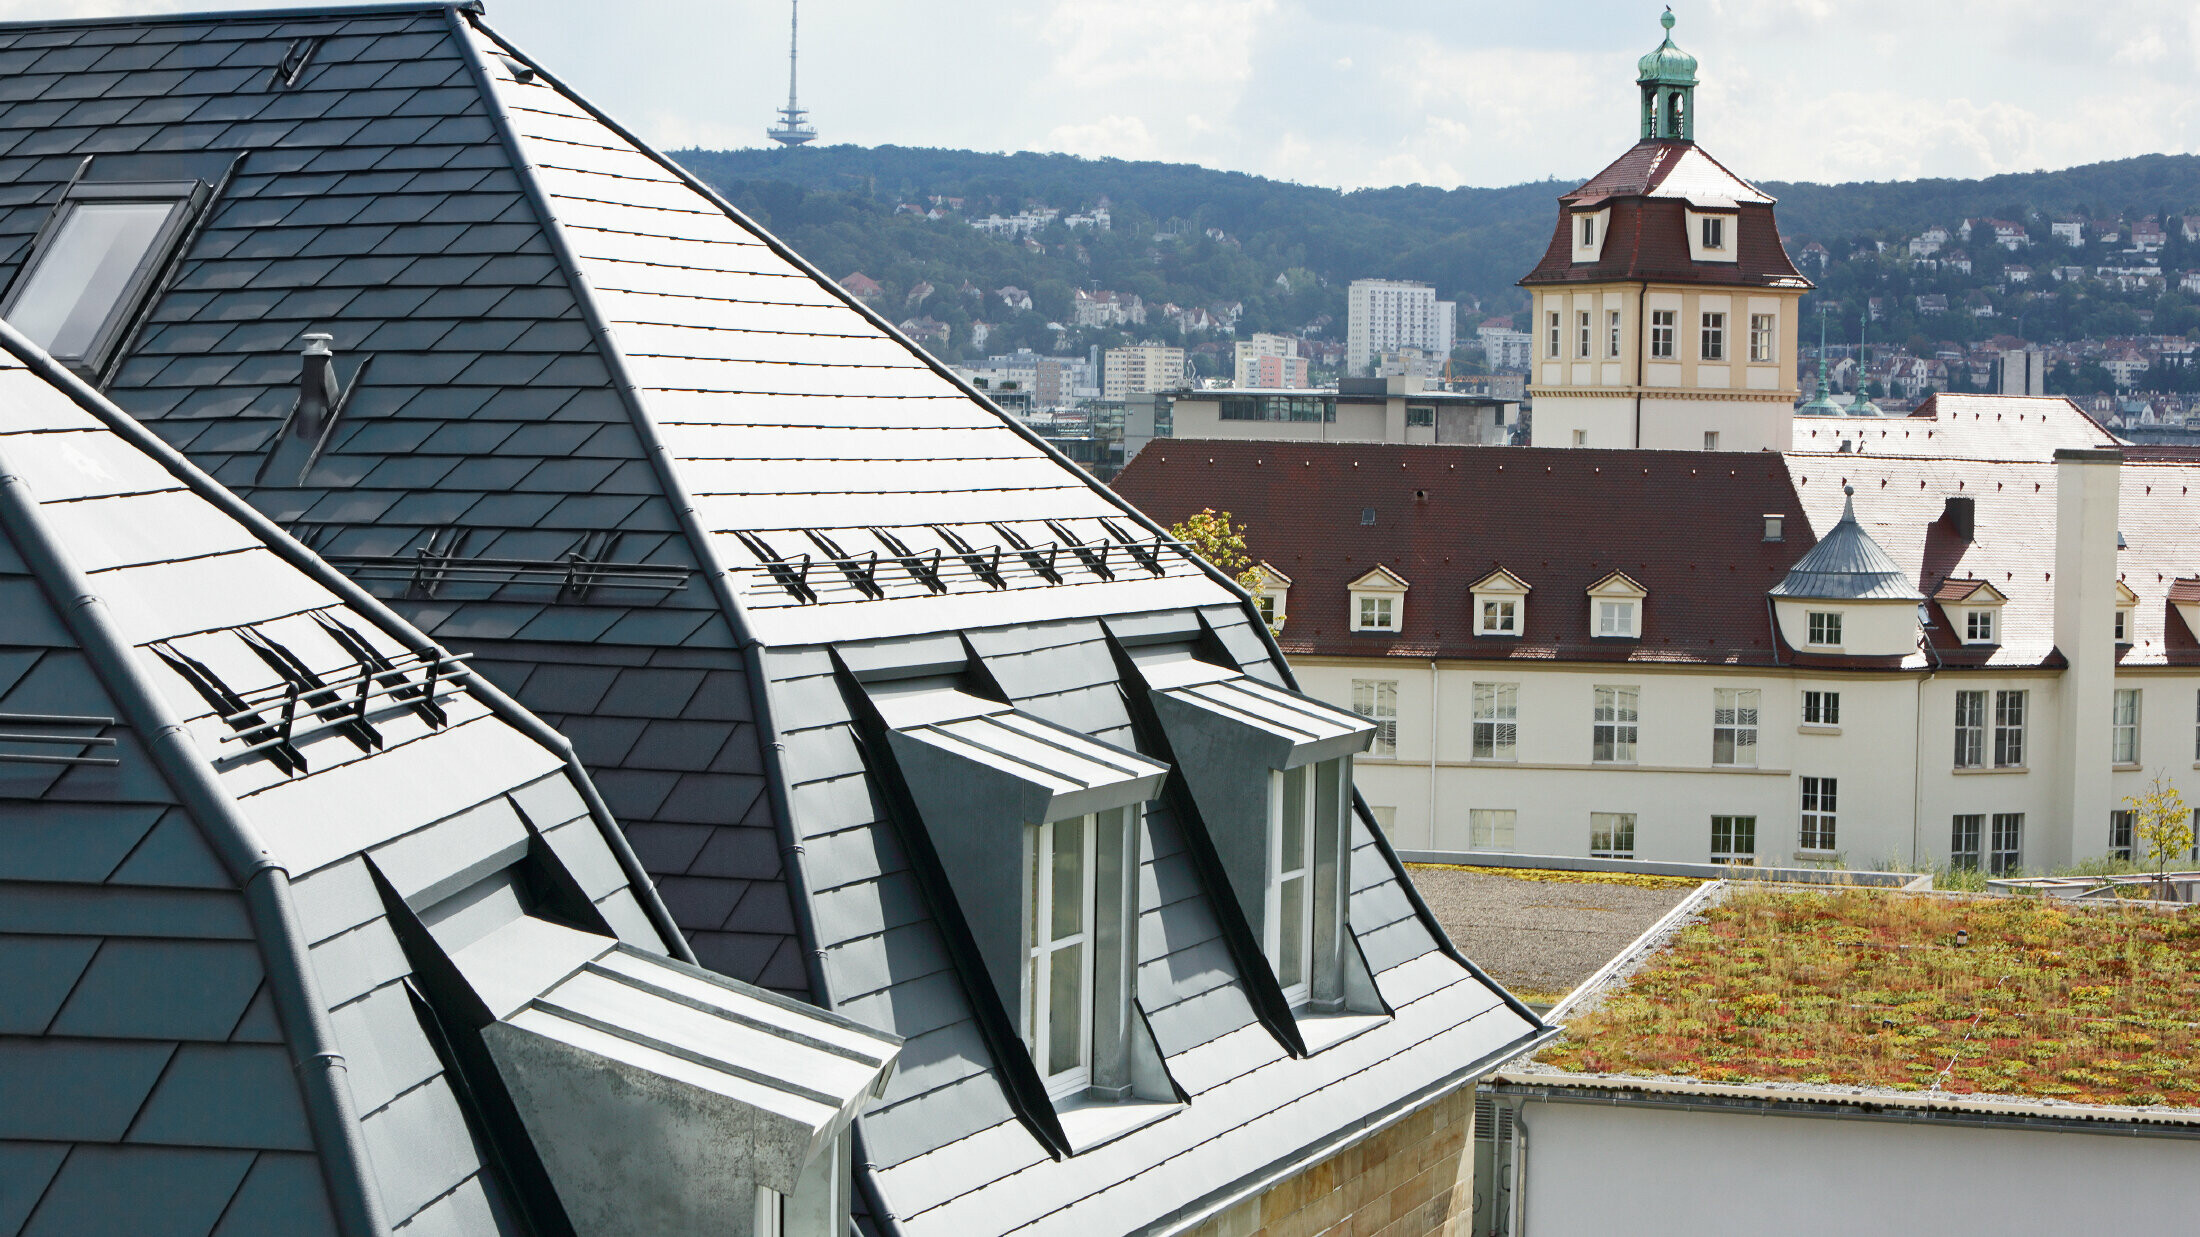 Altes Stadthaus in Stuttgart mit geknicktem Dach und vielen Gaubenfenstern, eingedeckt mit der Aluschindel von PREFA in P.10 Anthrazit